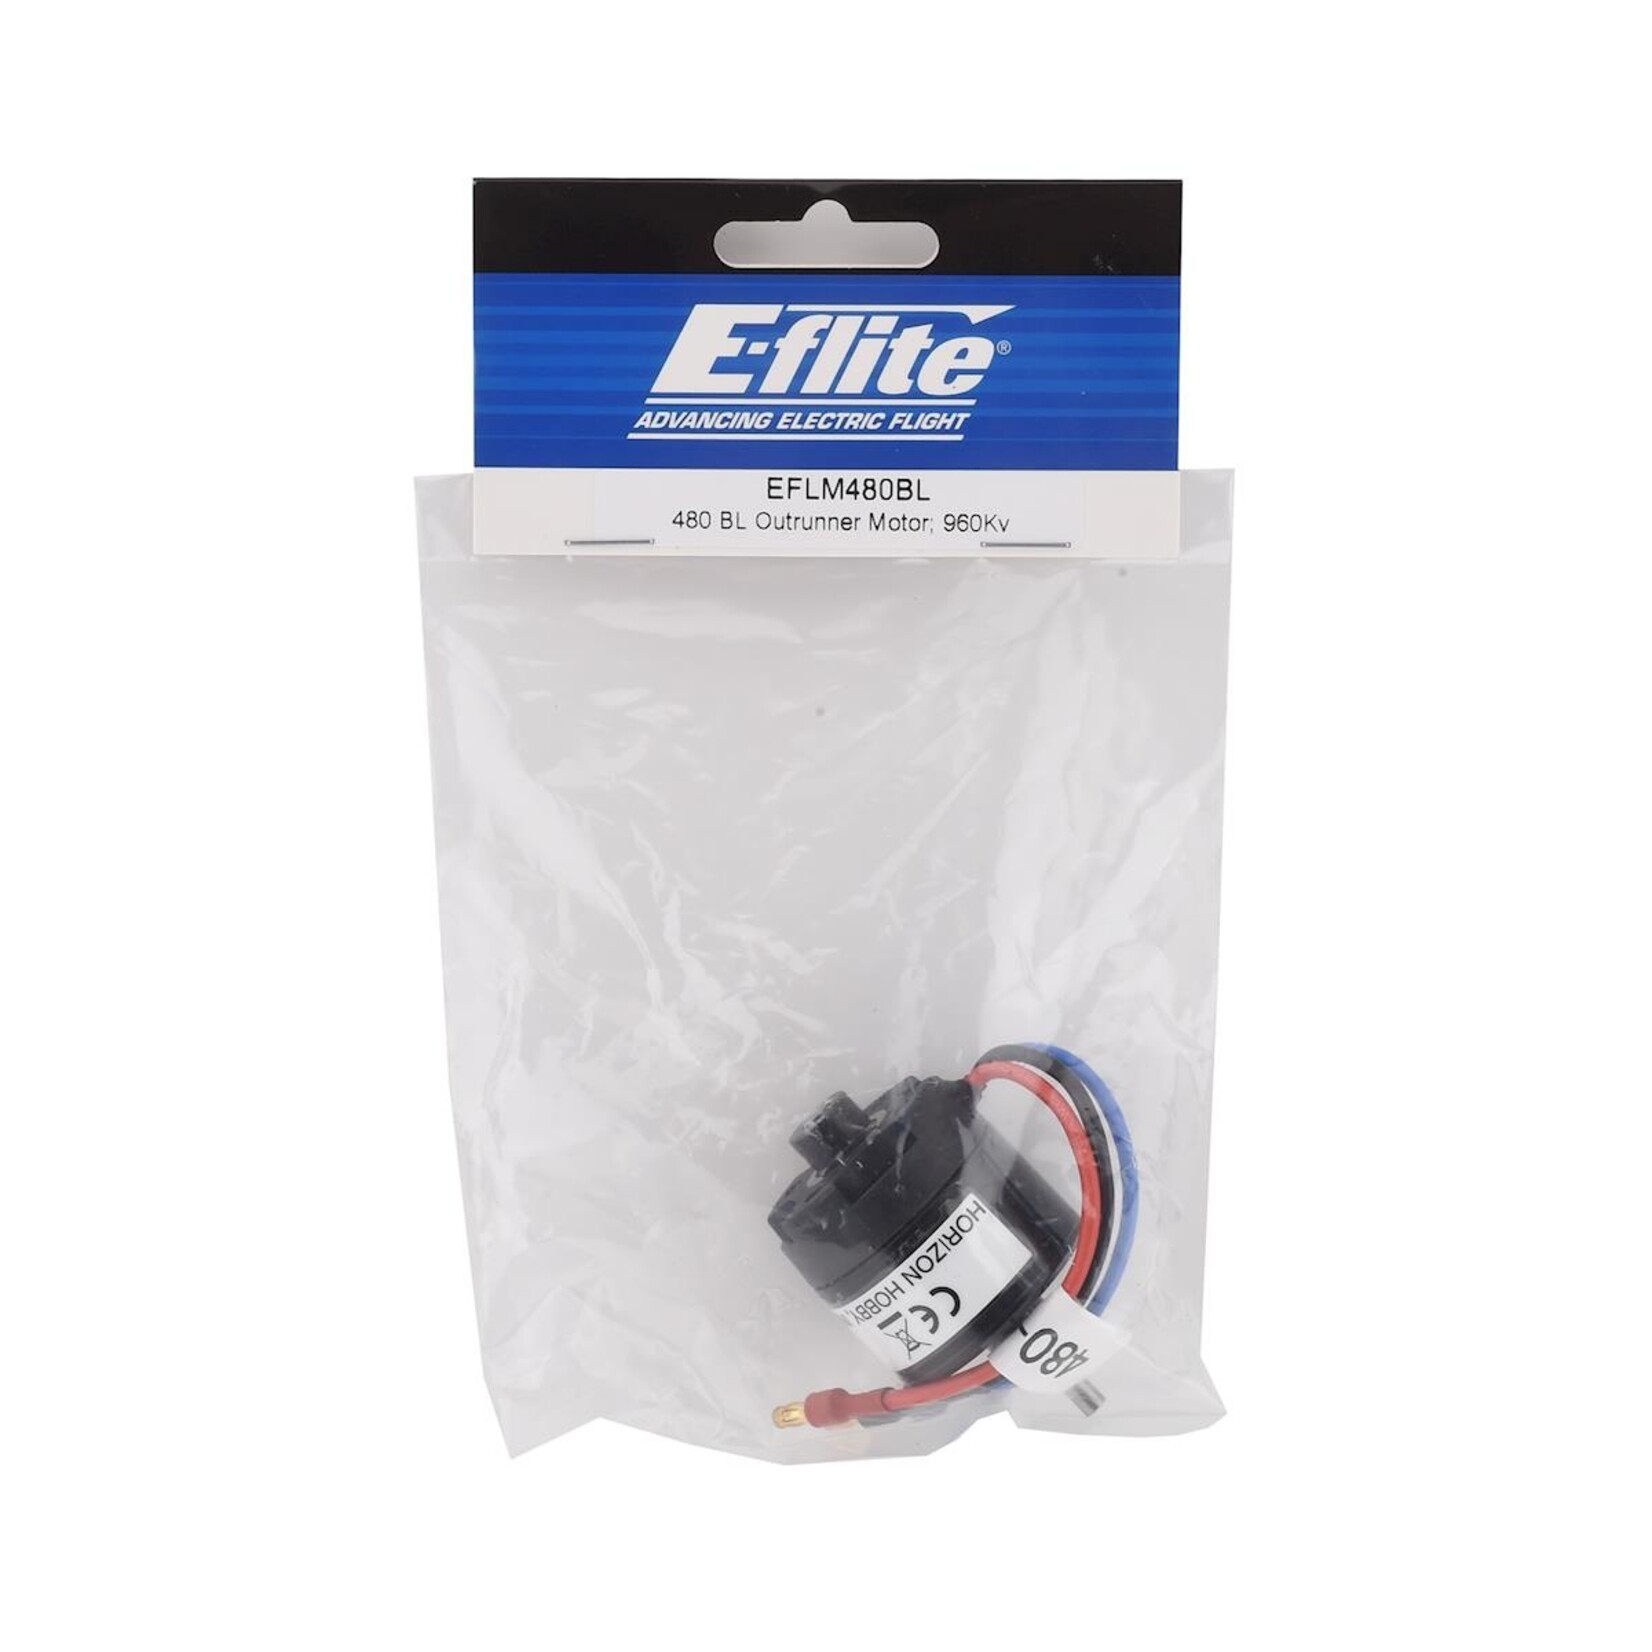 E-flite E-flite 480 Brushless Outrunner Motor (960kV) #EFLM480BL